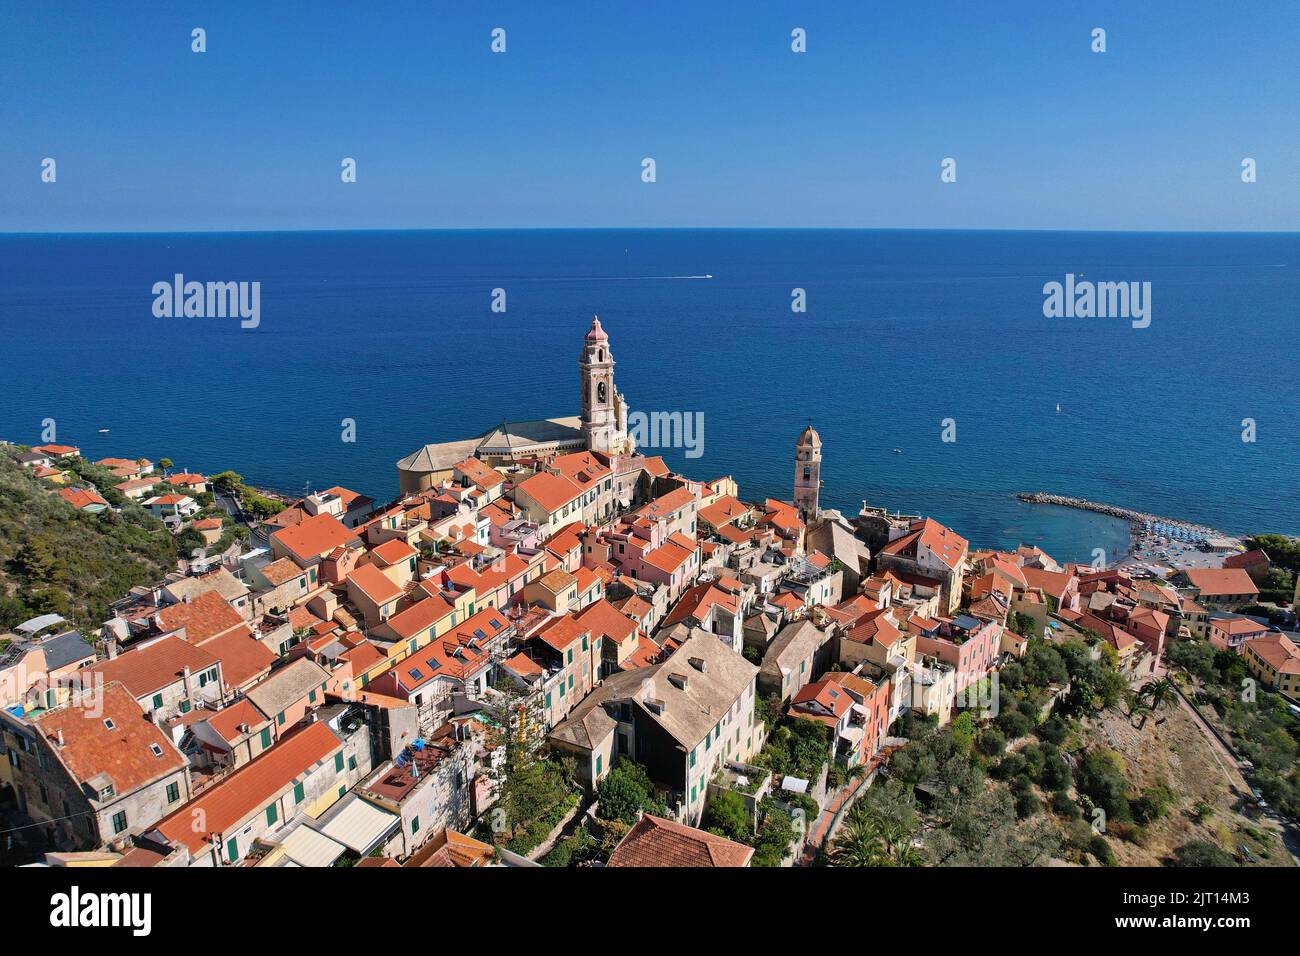 Veduta aerea del paese di Cervo sulla Riviera Italiana in provincia di Imperia, Liguria, Italia. Foto Stock